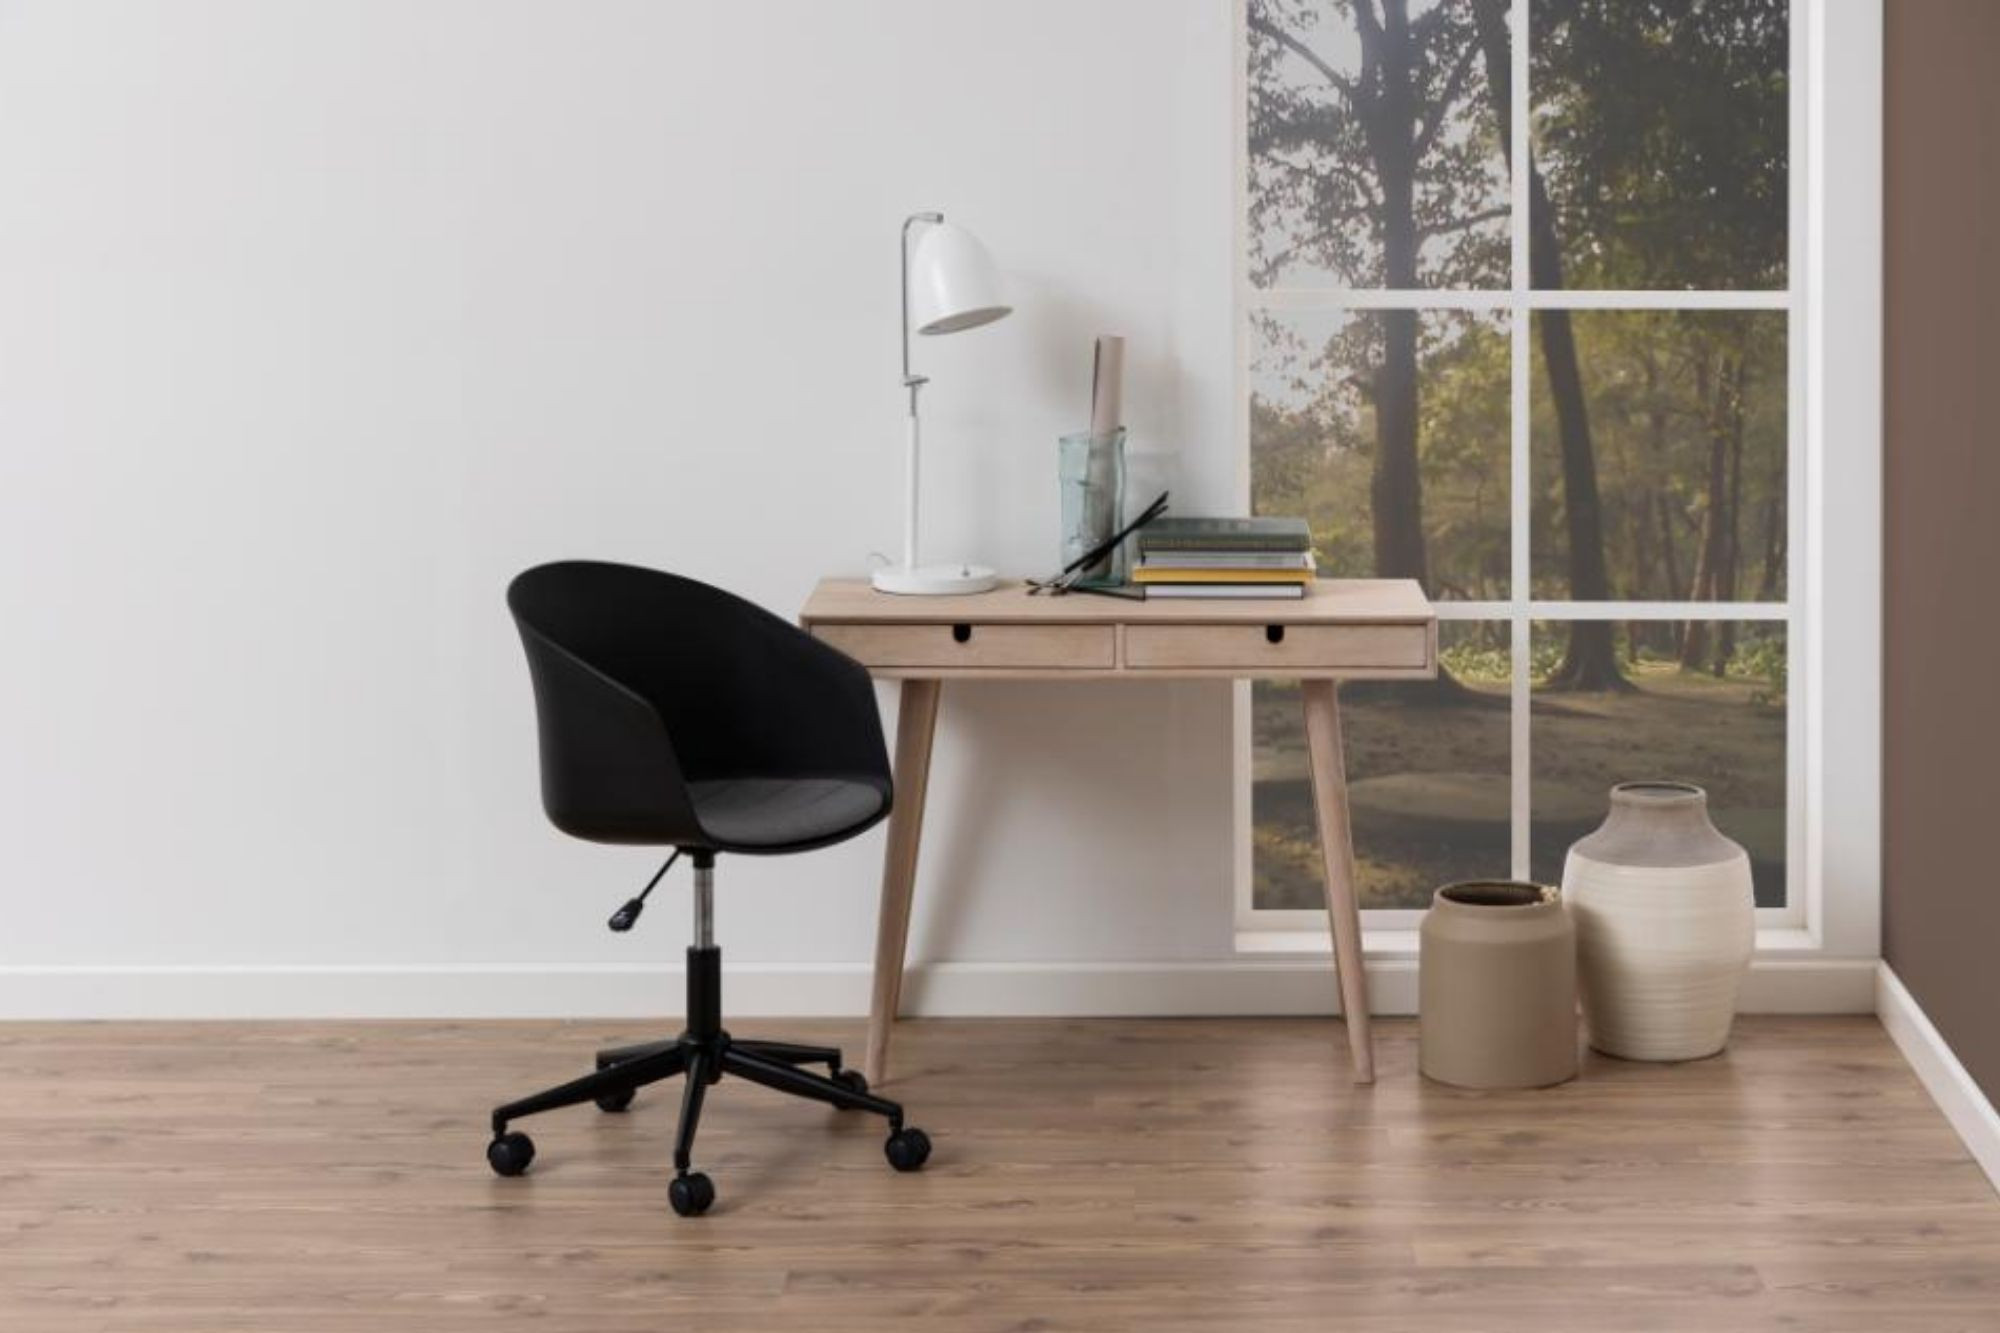 Bureau design en bois avec tiroirs pour bureau